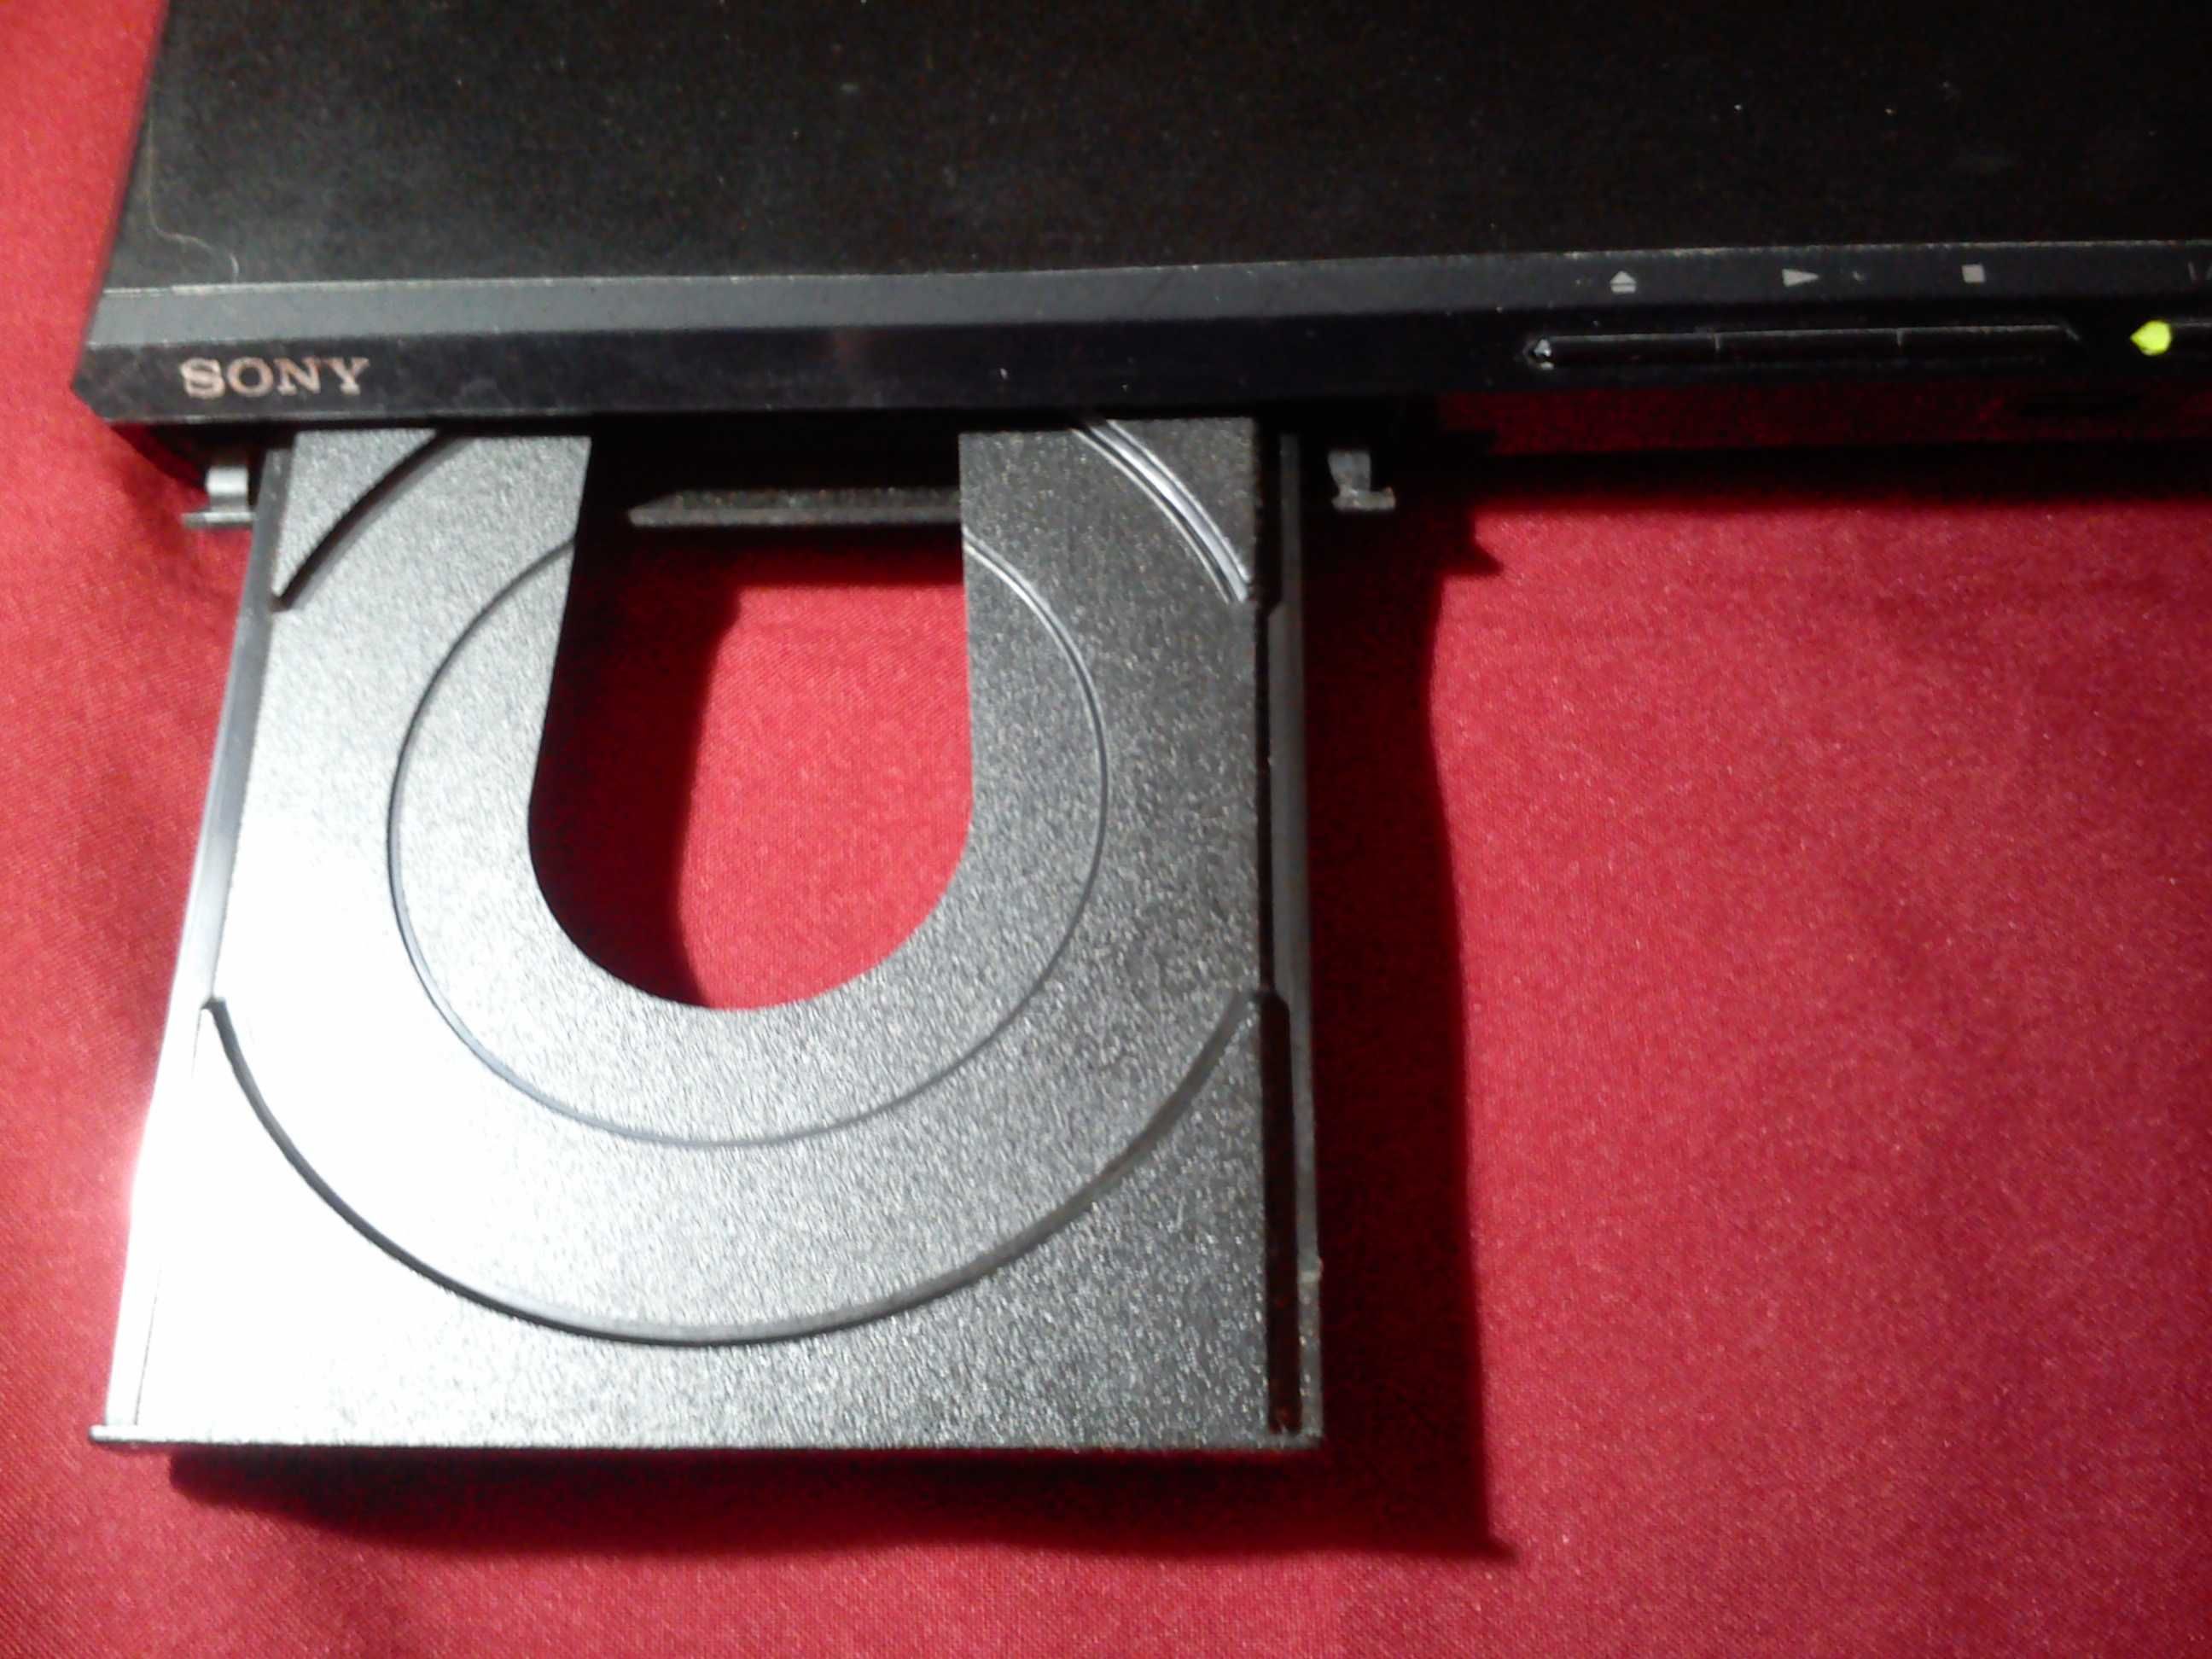 Odtwarzacz DVD Sony plus pilot, model DVP-SR370